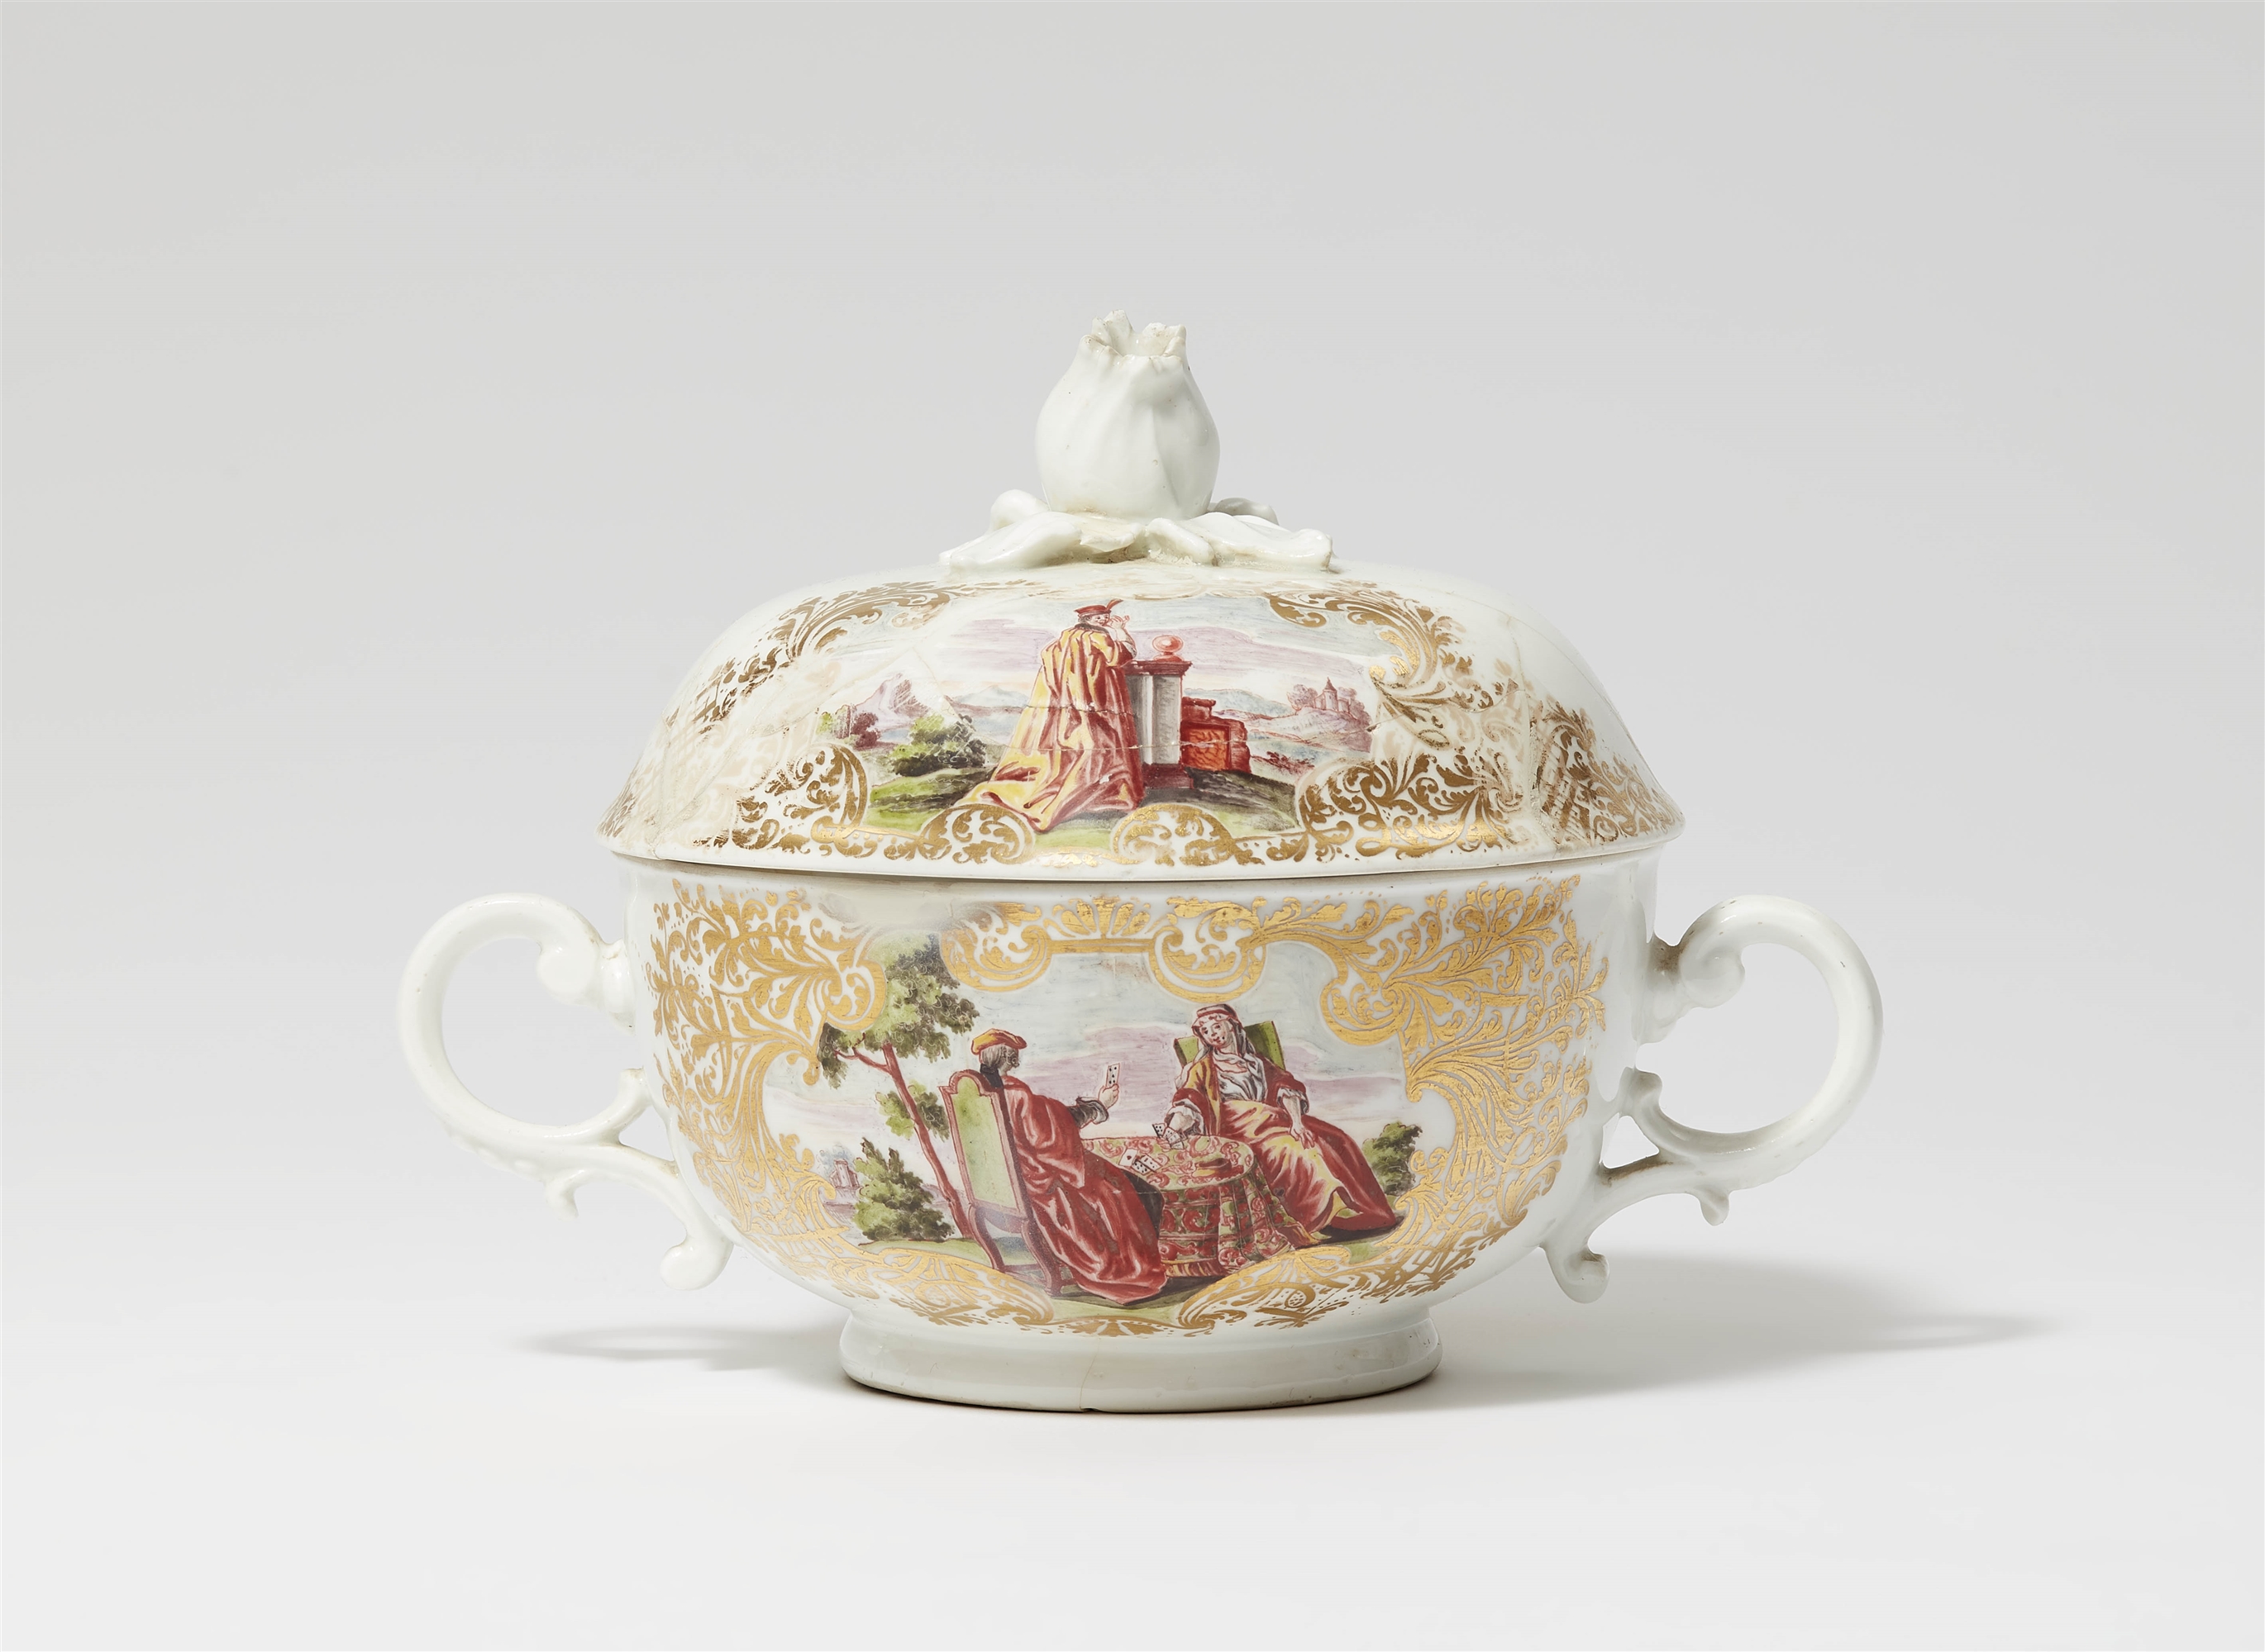 A Meissen porcelain tureen with "hausmaler" decor